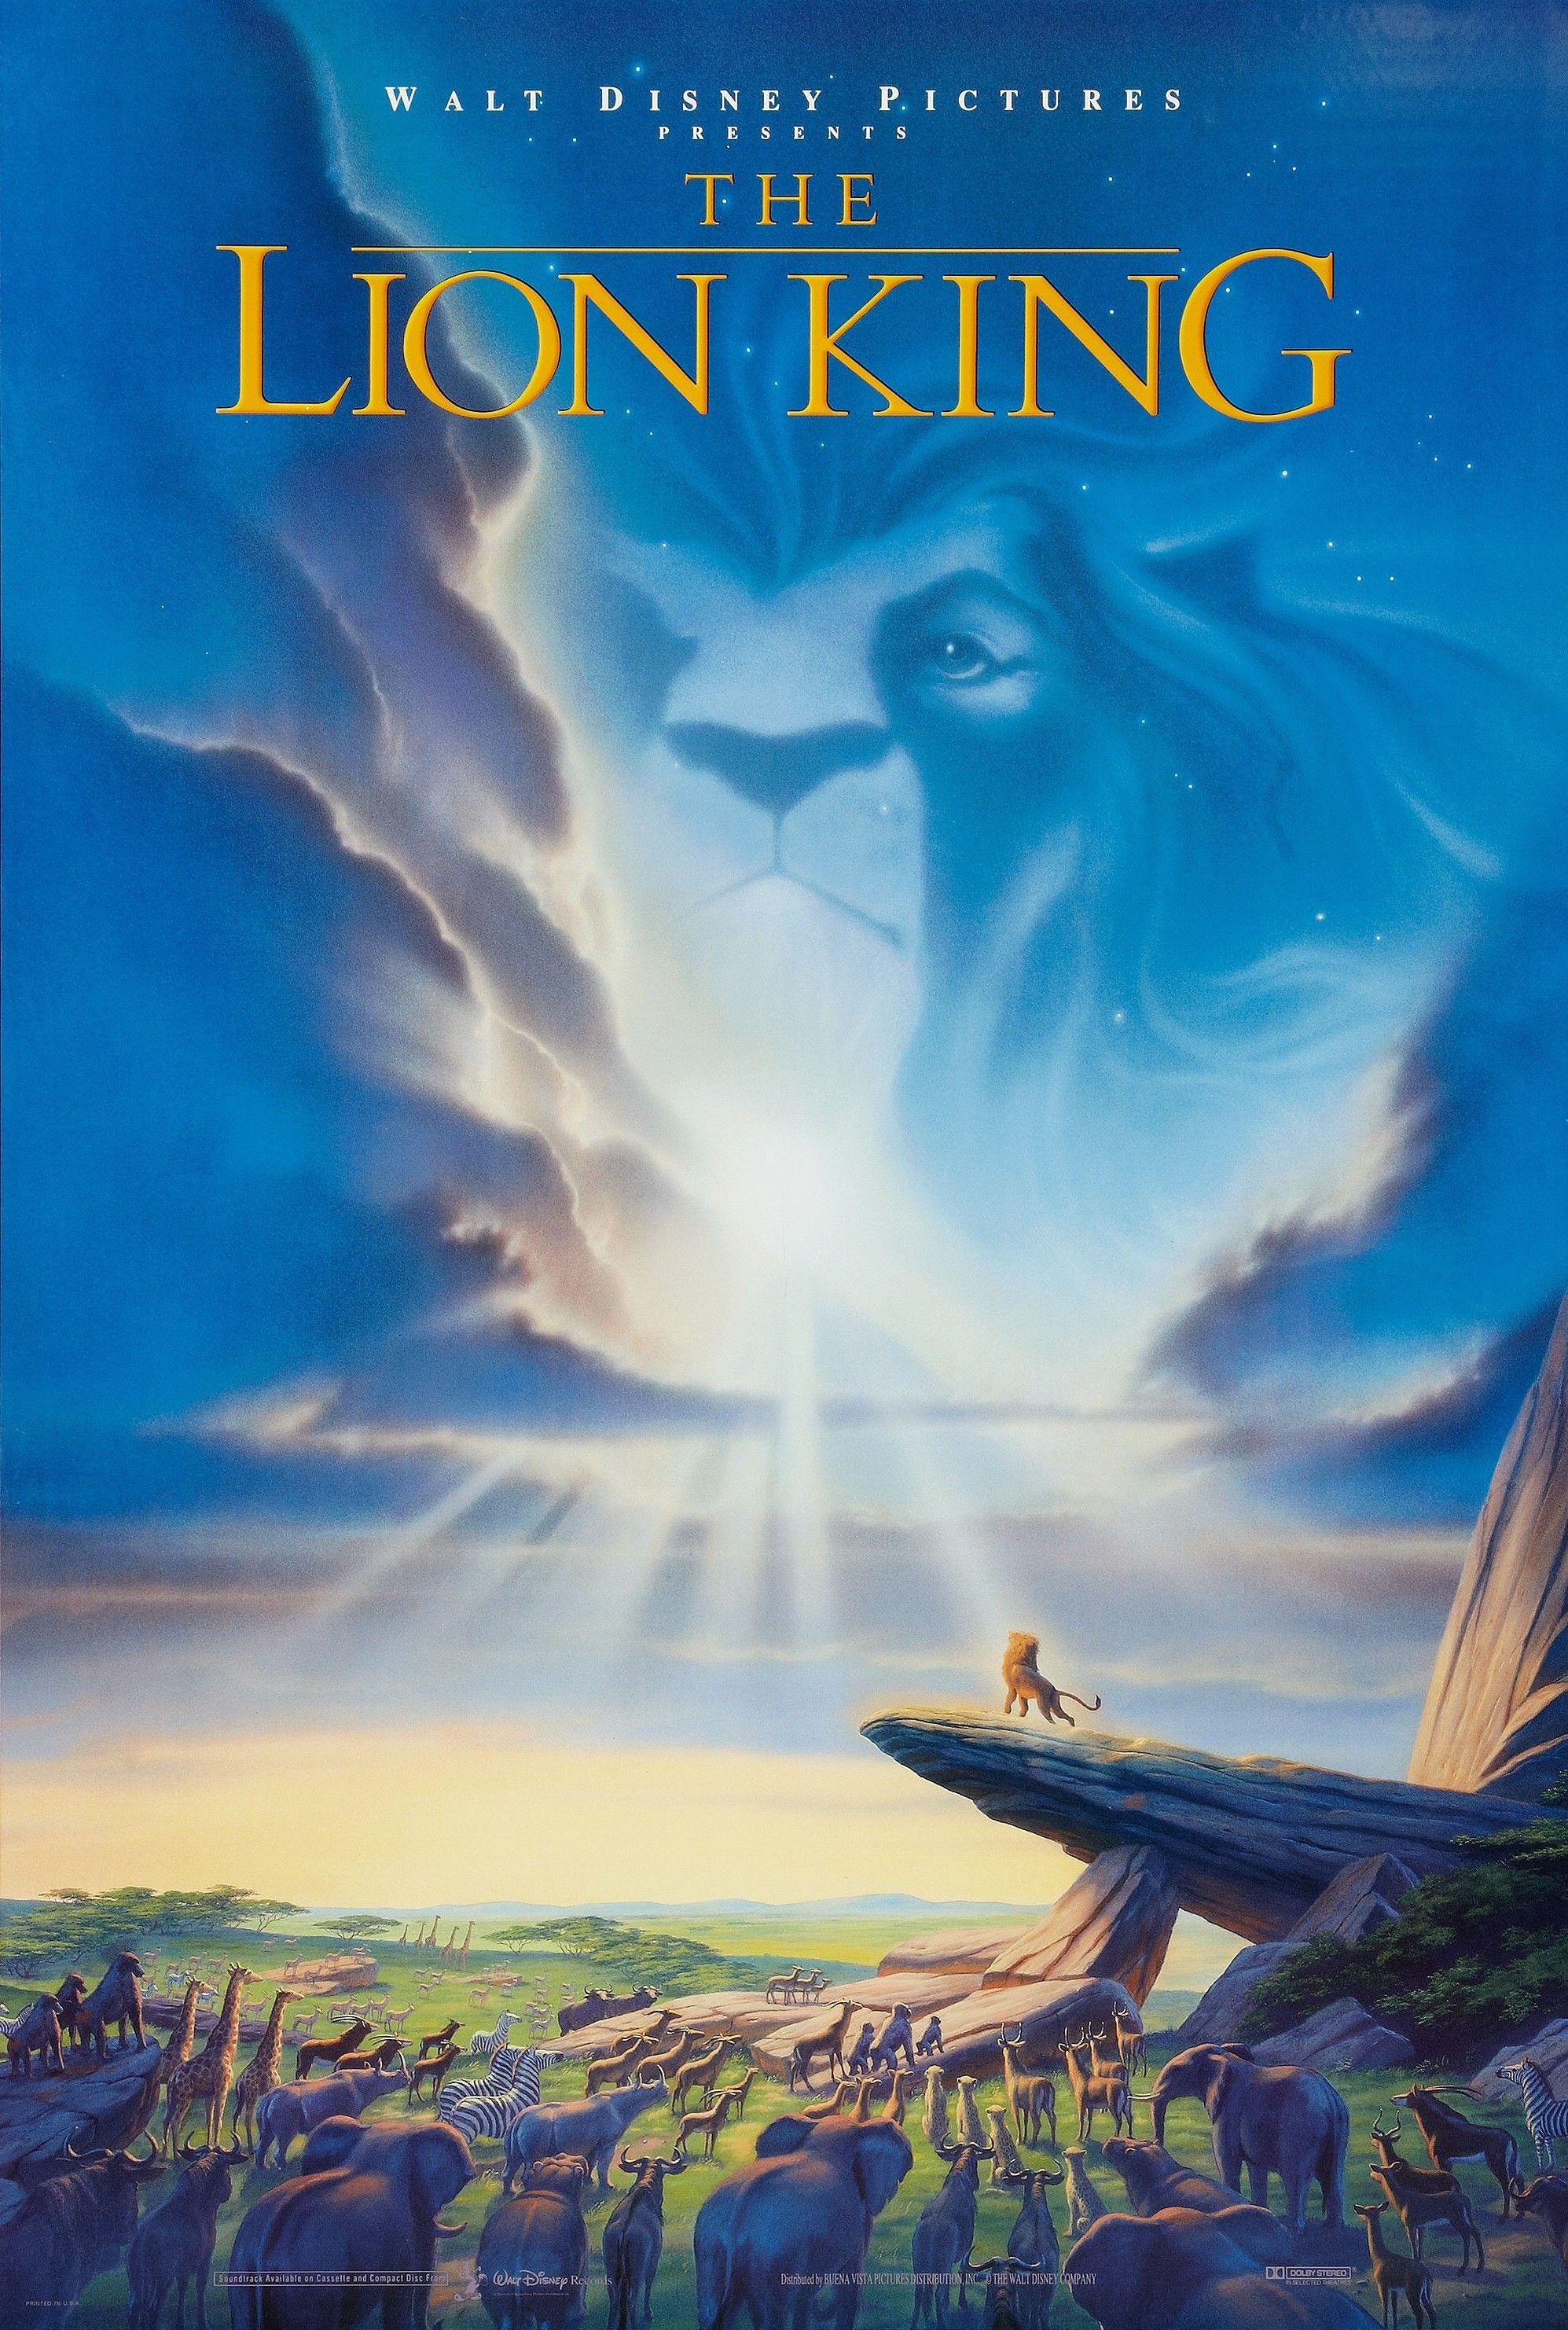 Disney's Lion King Movie Logo - The Lion King | Disney Wiki | FANDOM powered by Wikia